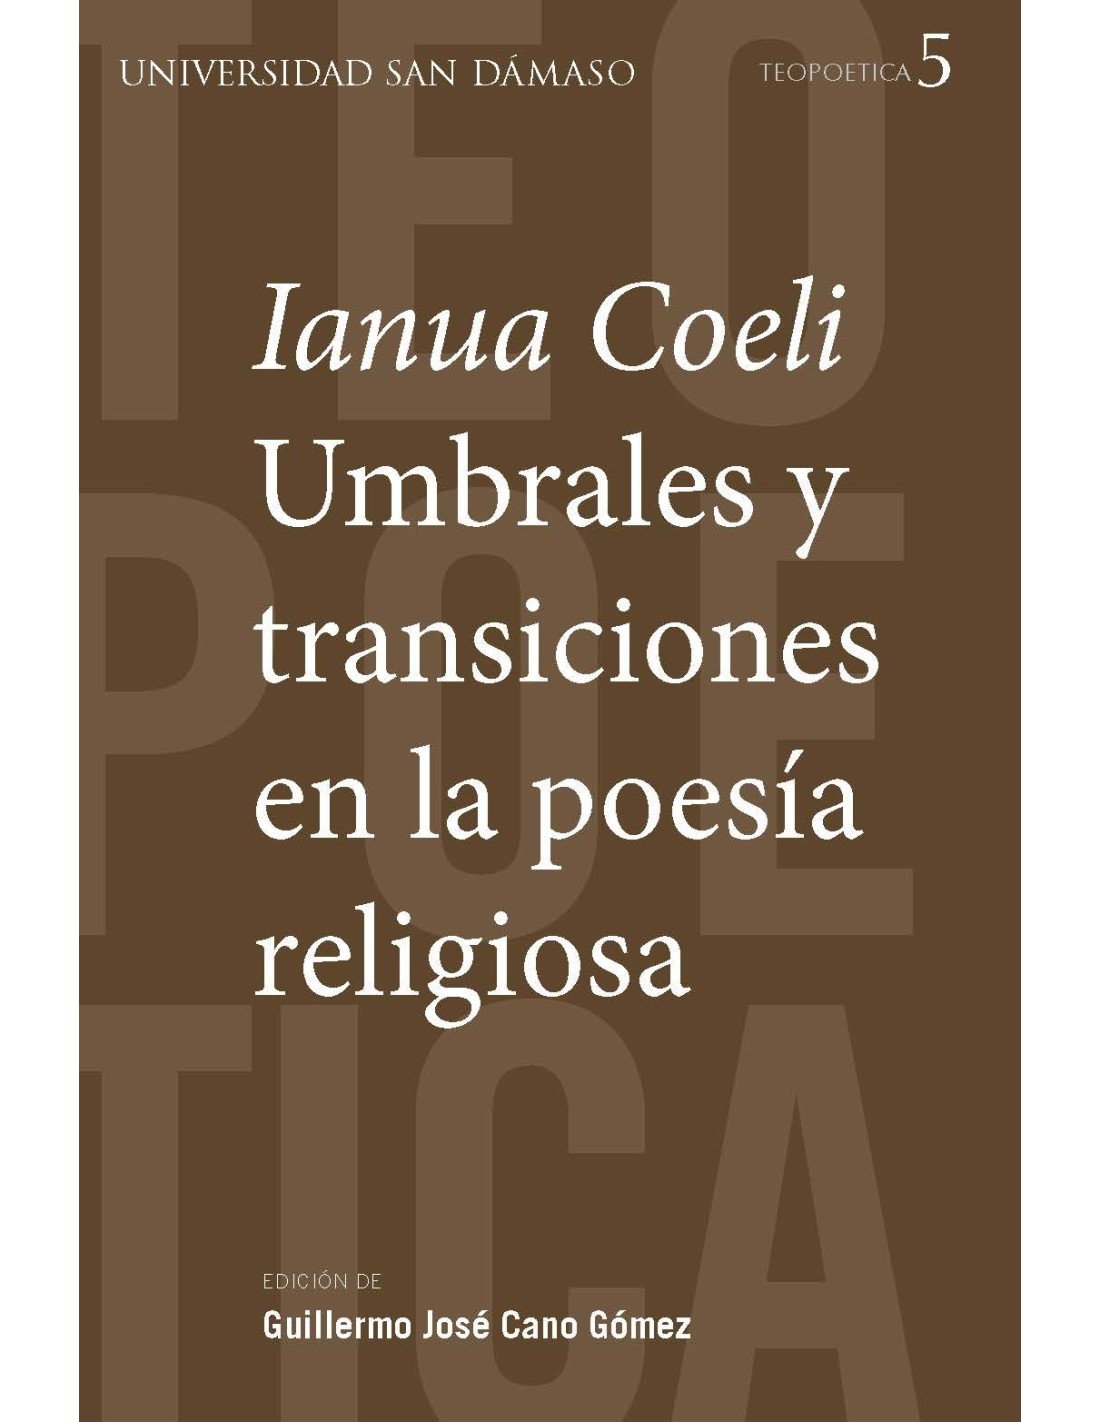 Imagen de portada del libro «Ianua Coeli»